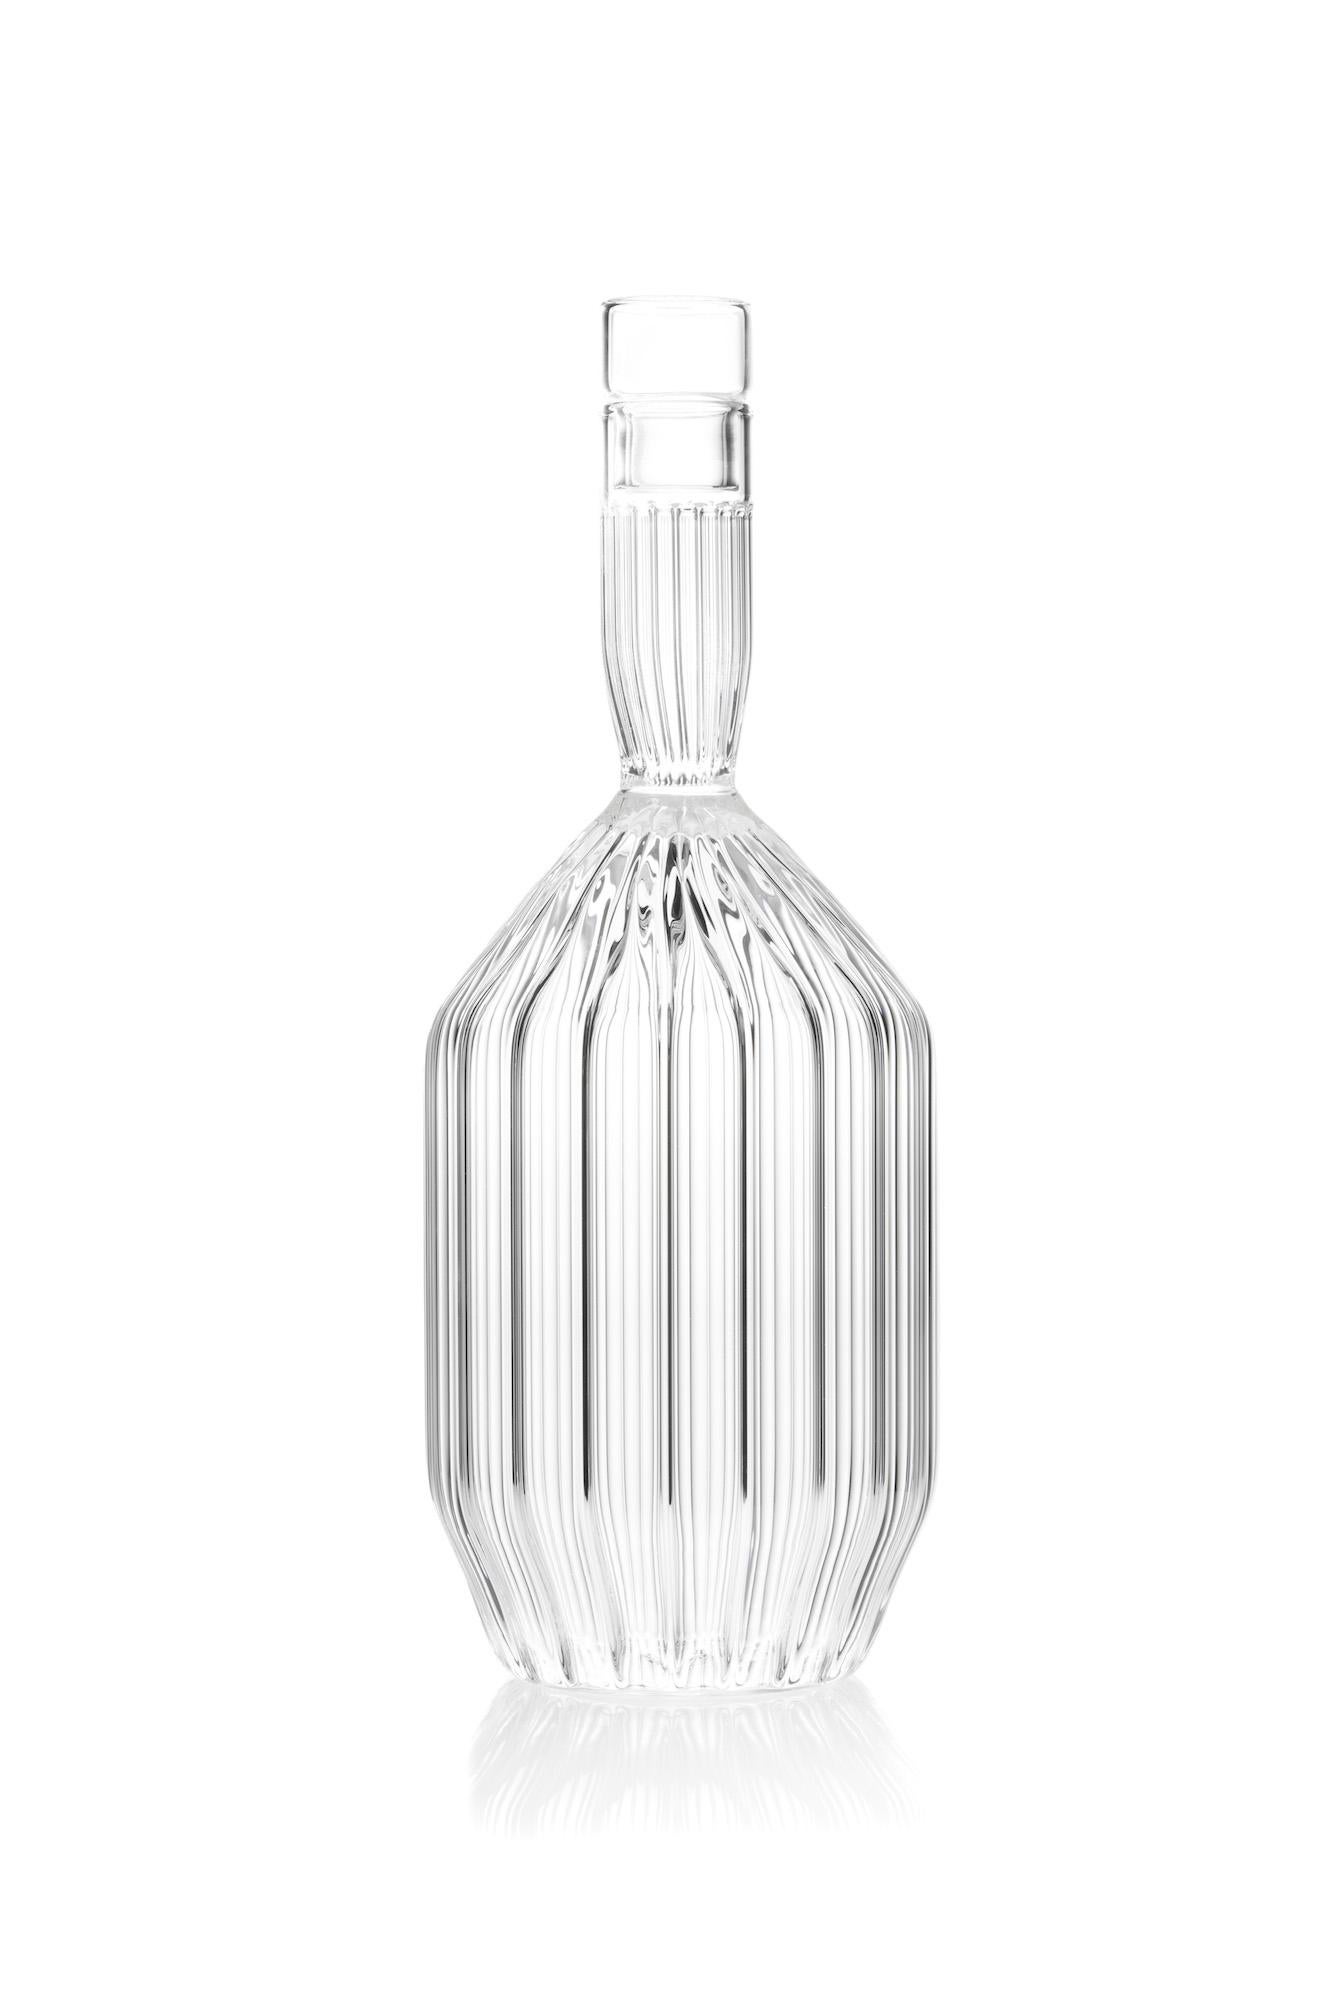 Die Collection'S Margot, eine maximalistische Kollektion, die durch die Einführung von geriffeltem Borosilikatglas mit großzügigen Proportionen zum Ausdruck kommt, wurde als Antwort auf Ferrones erste Kollektion, die minimalistische Revolution,